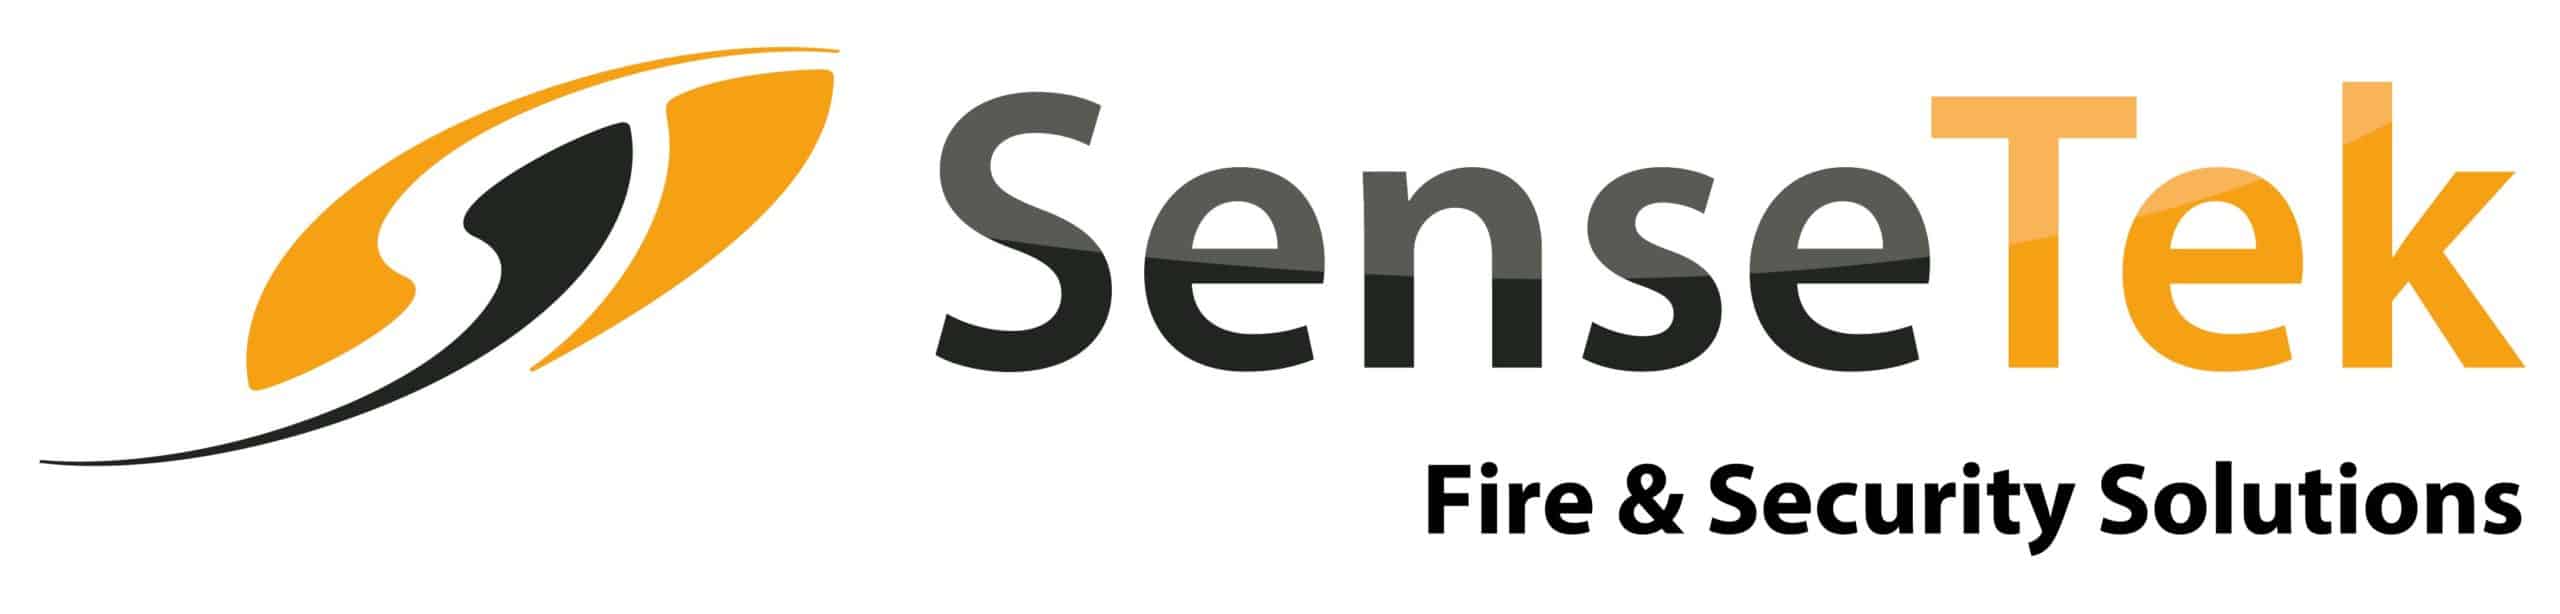 Sensetek-1-scaled